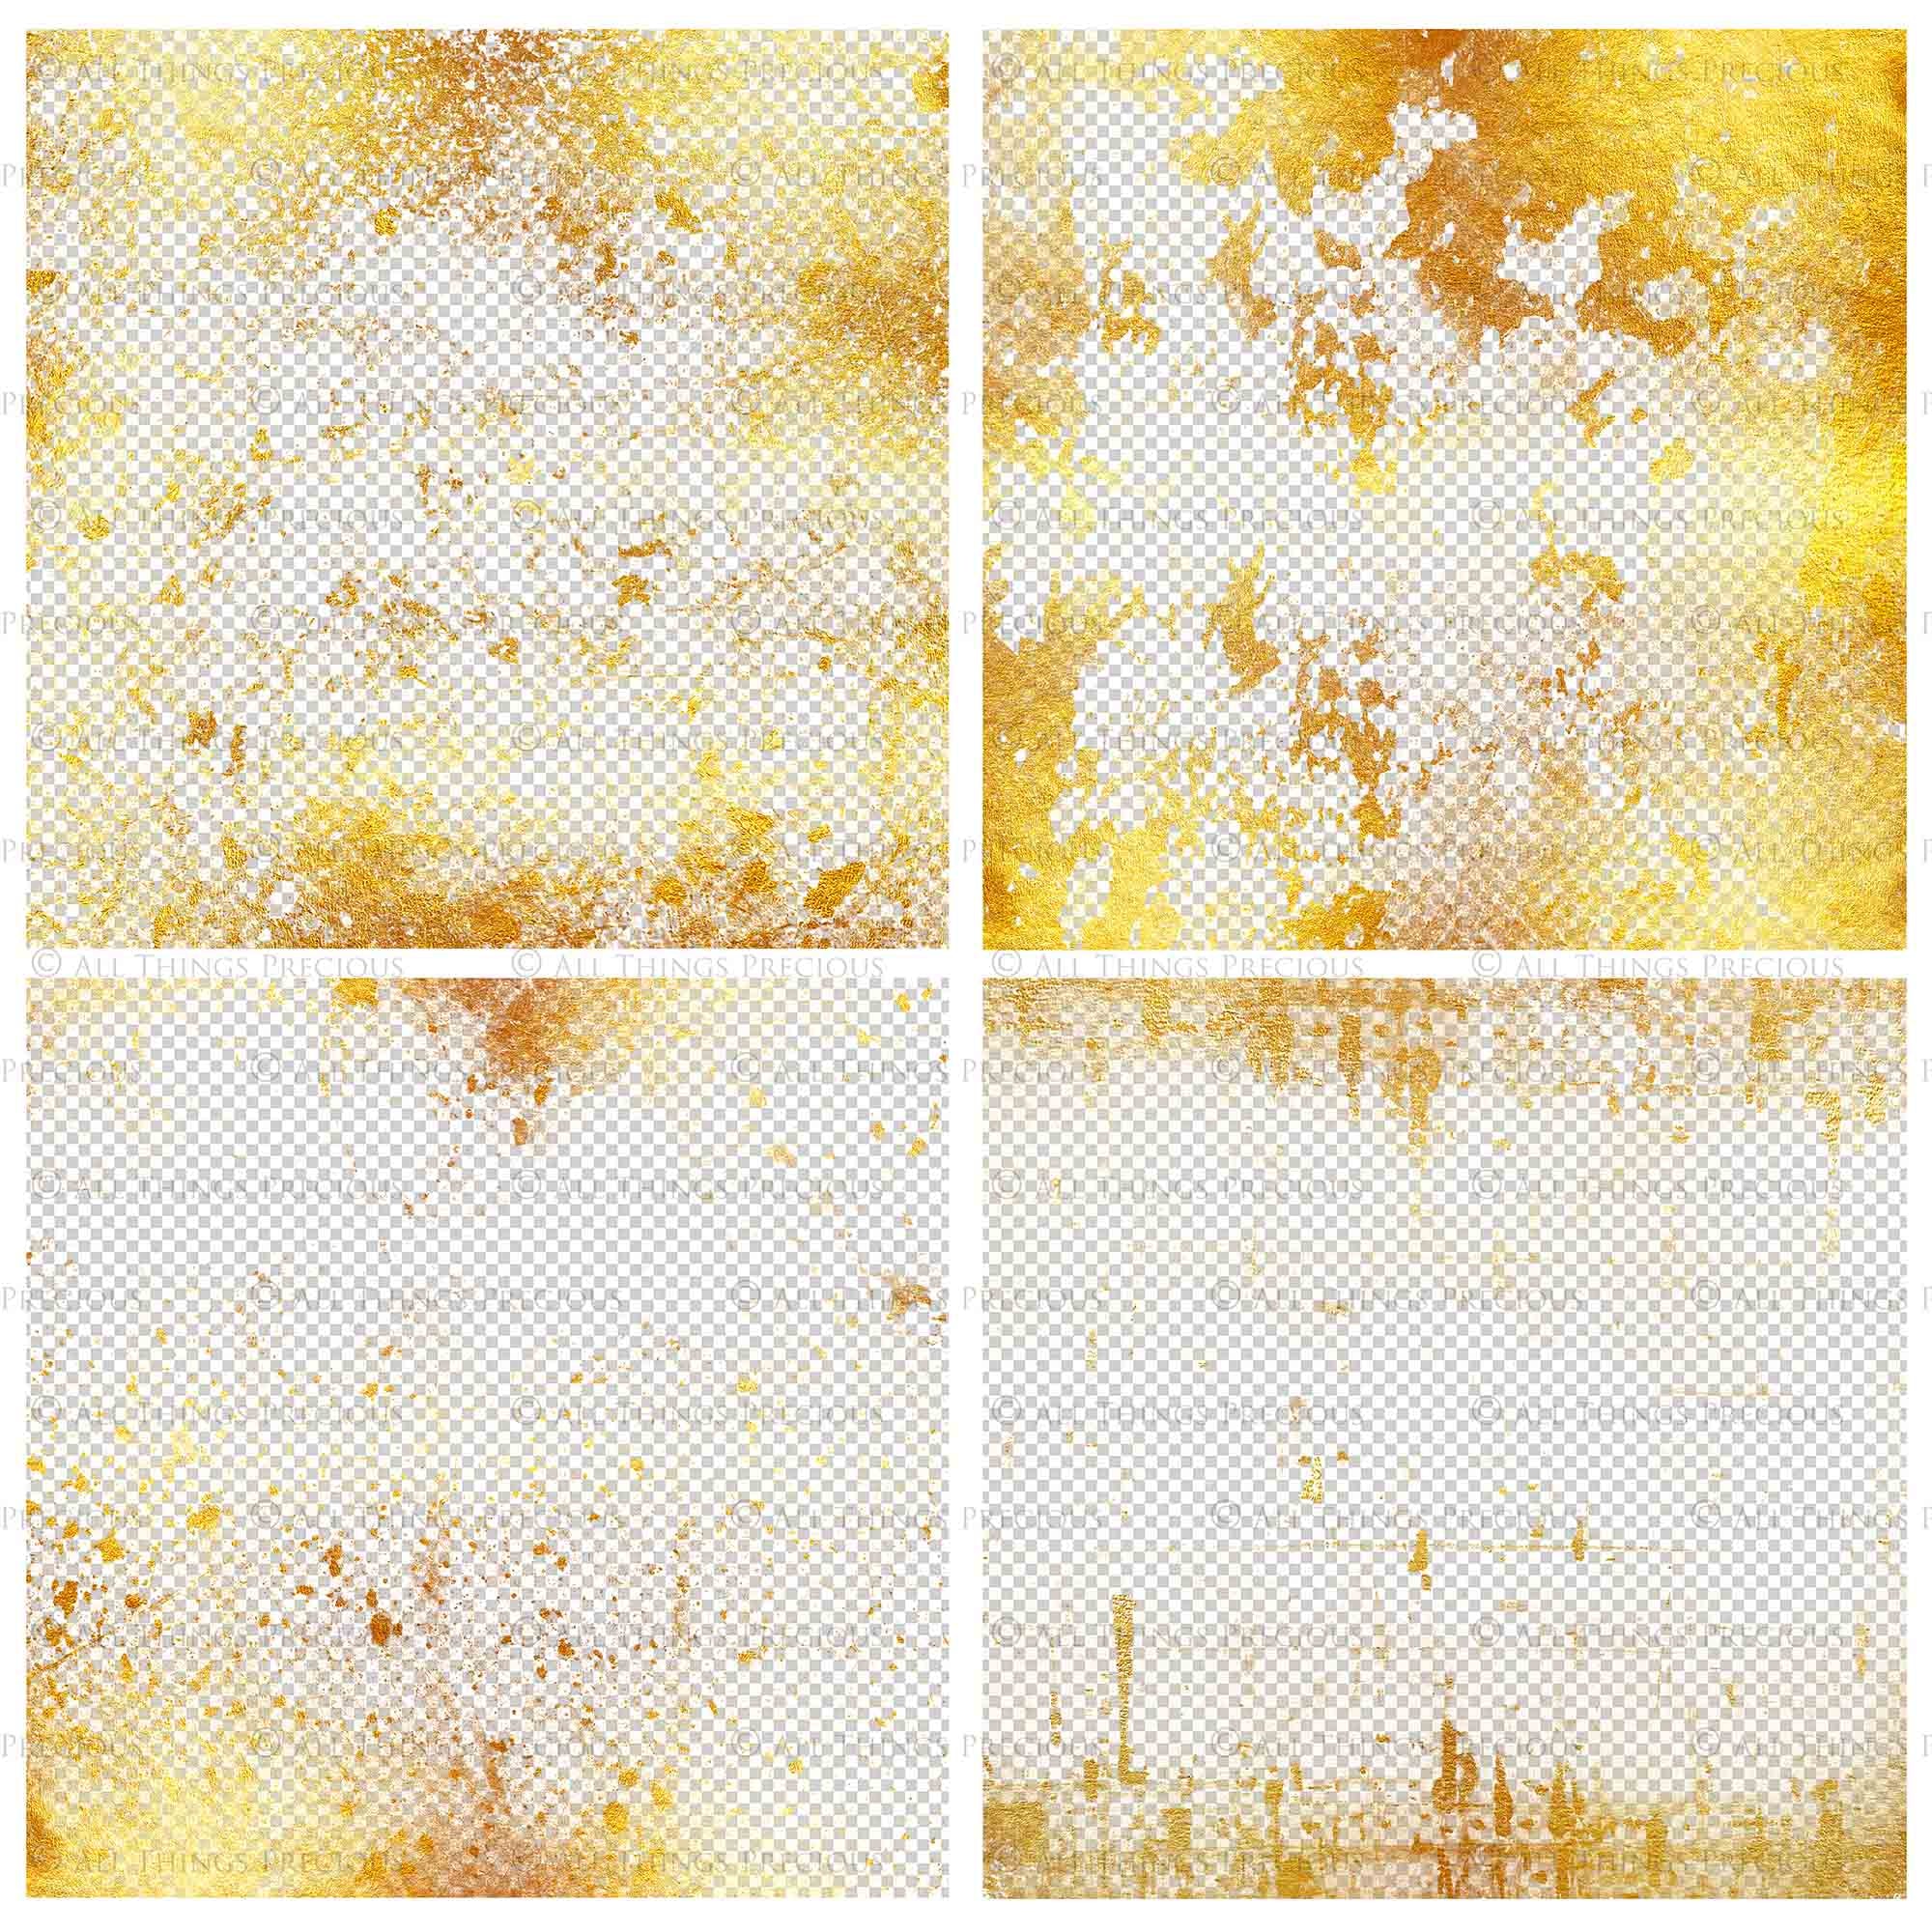 GRUNGE GOLD - Transparent Digital Papers